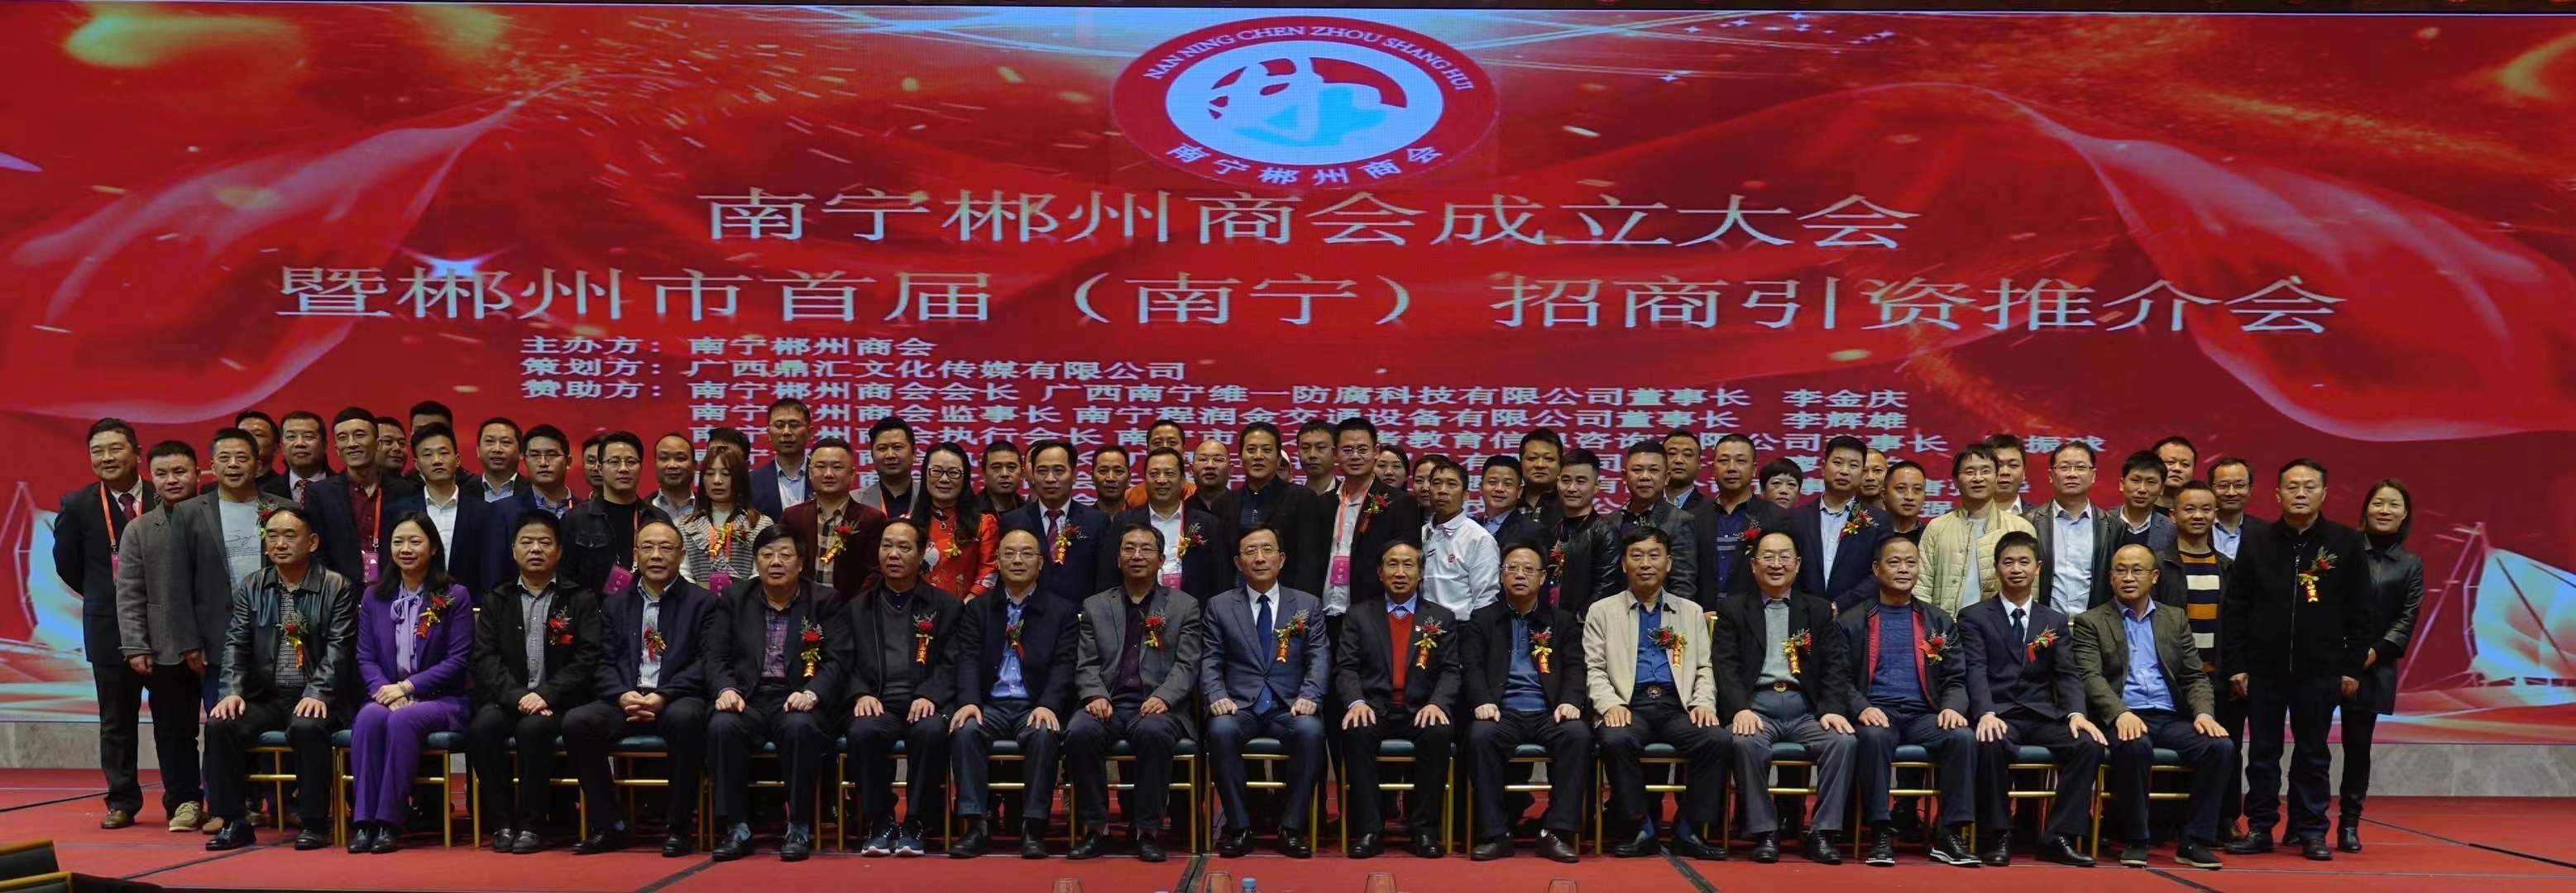 我司当选为广西南宁郴州商会会长单位